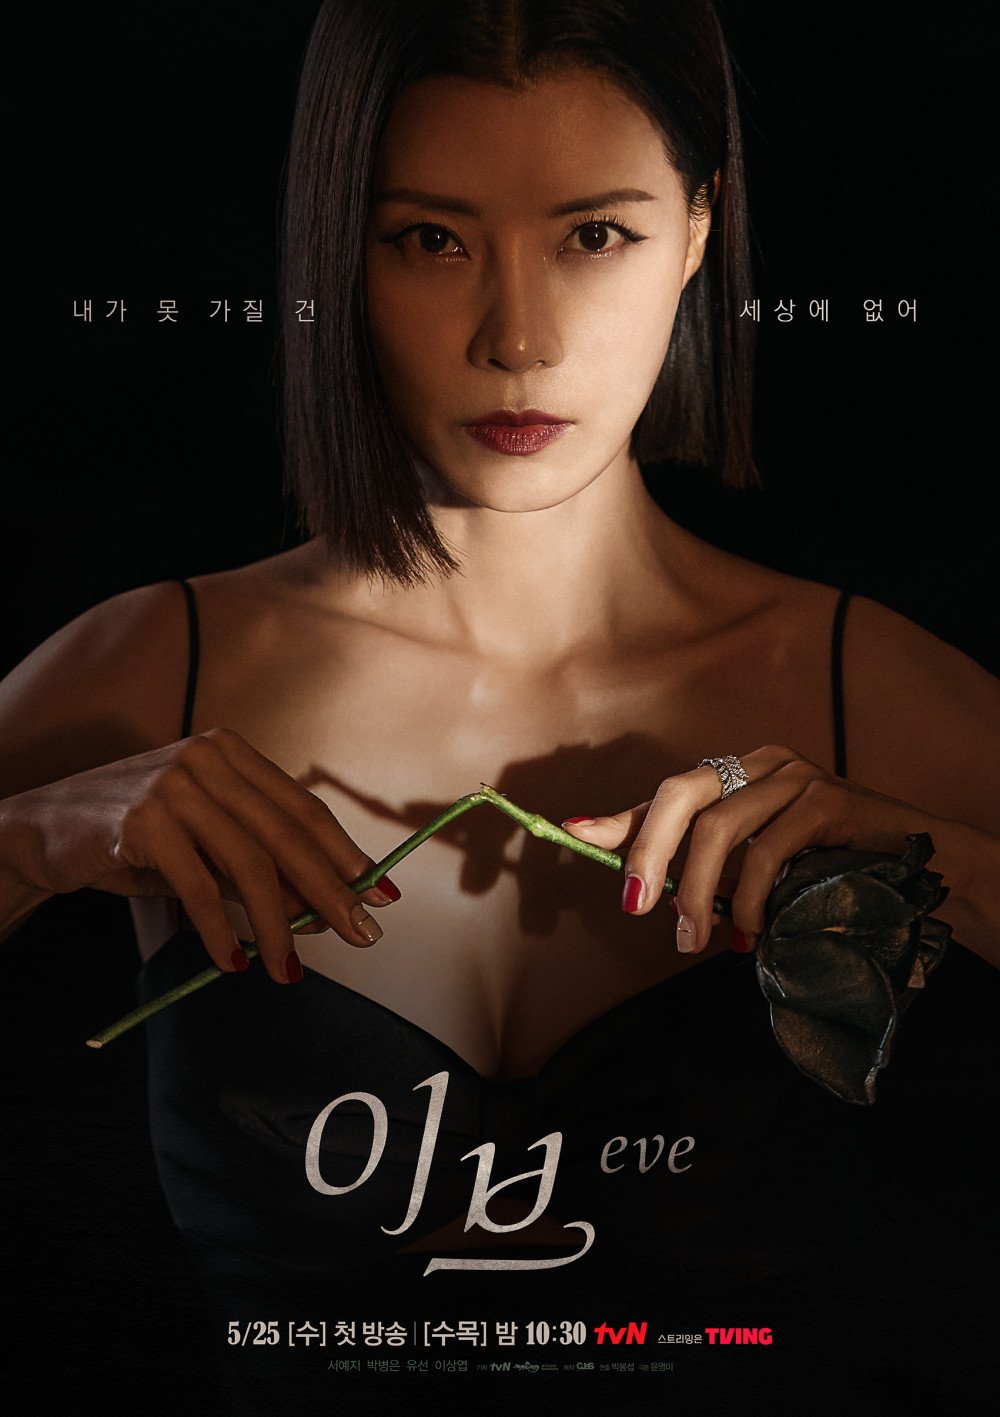 Новые постеры дорамы «Ева» с персонажами Со Йе Джи, Пак Бён Ына, Ю Сон и Ли Сан Ёпа